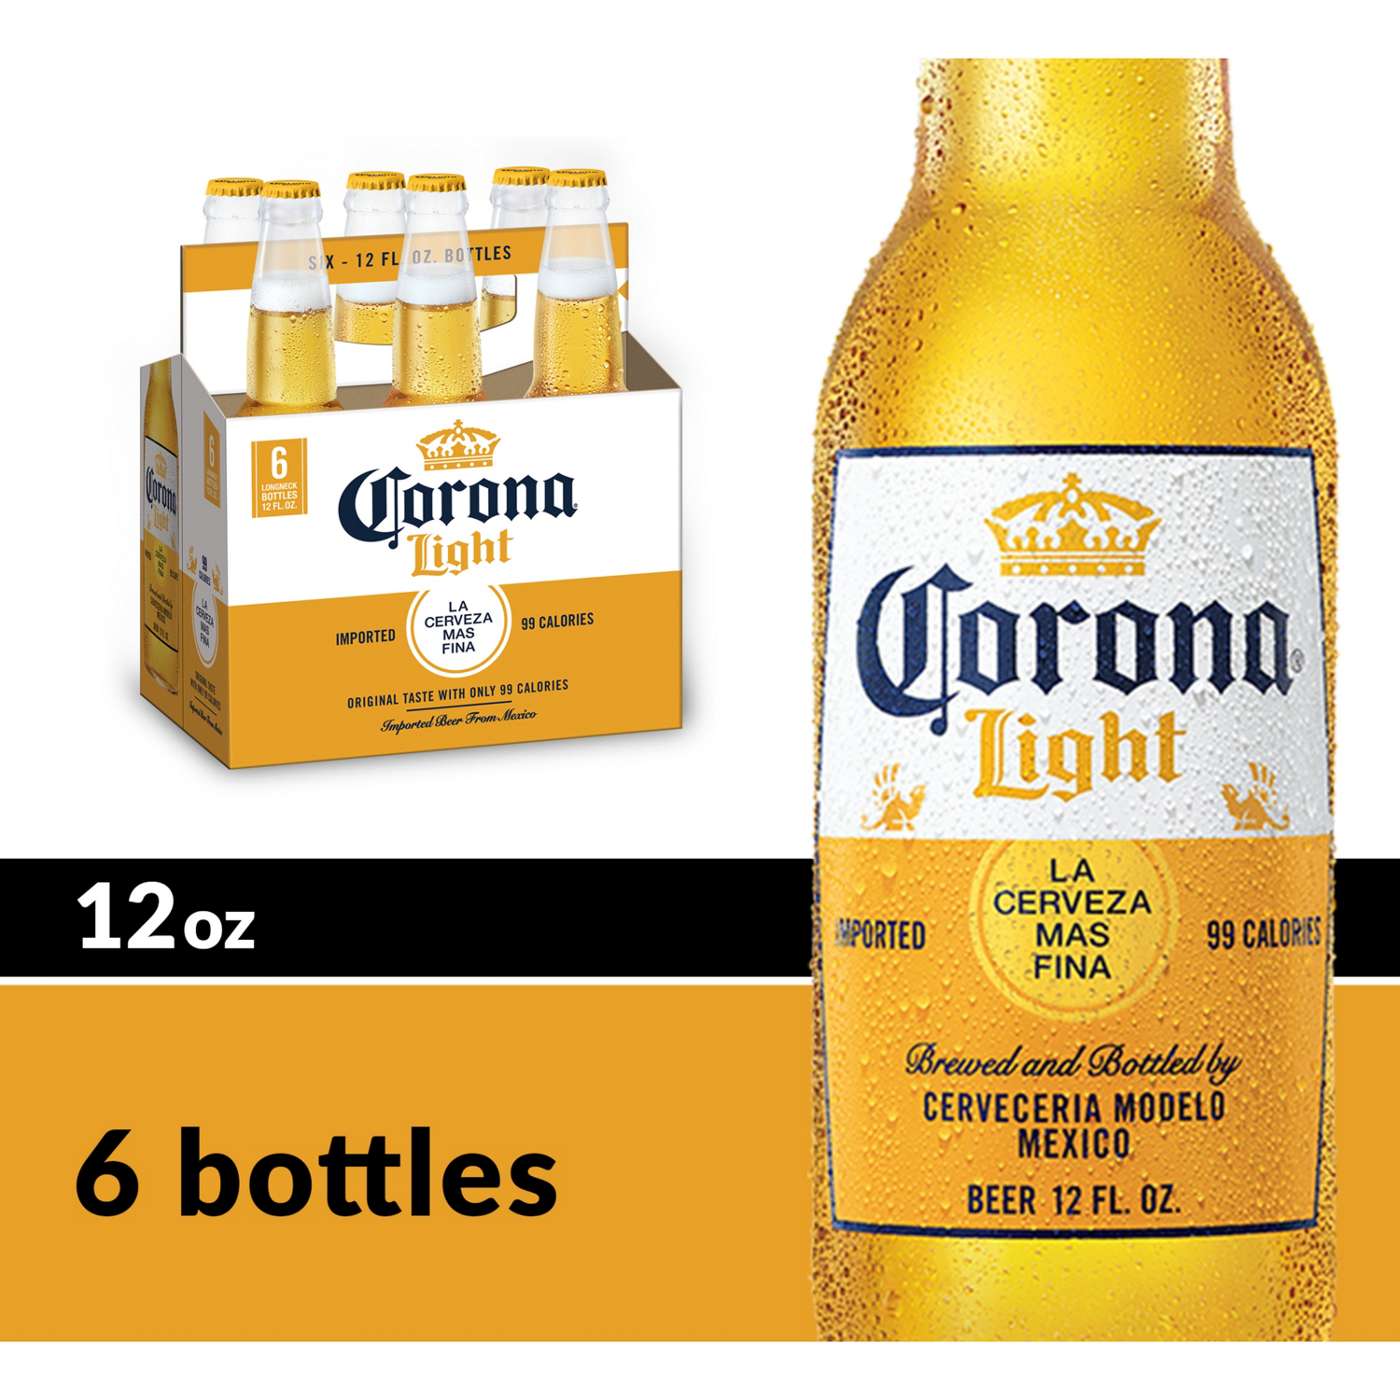 Corona Light Mexican Lager Import Light Beer 12 oz Bottles, 6 pk; image 2 of 10